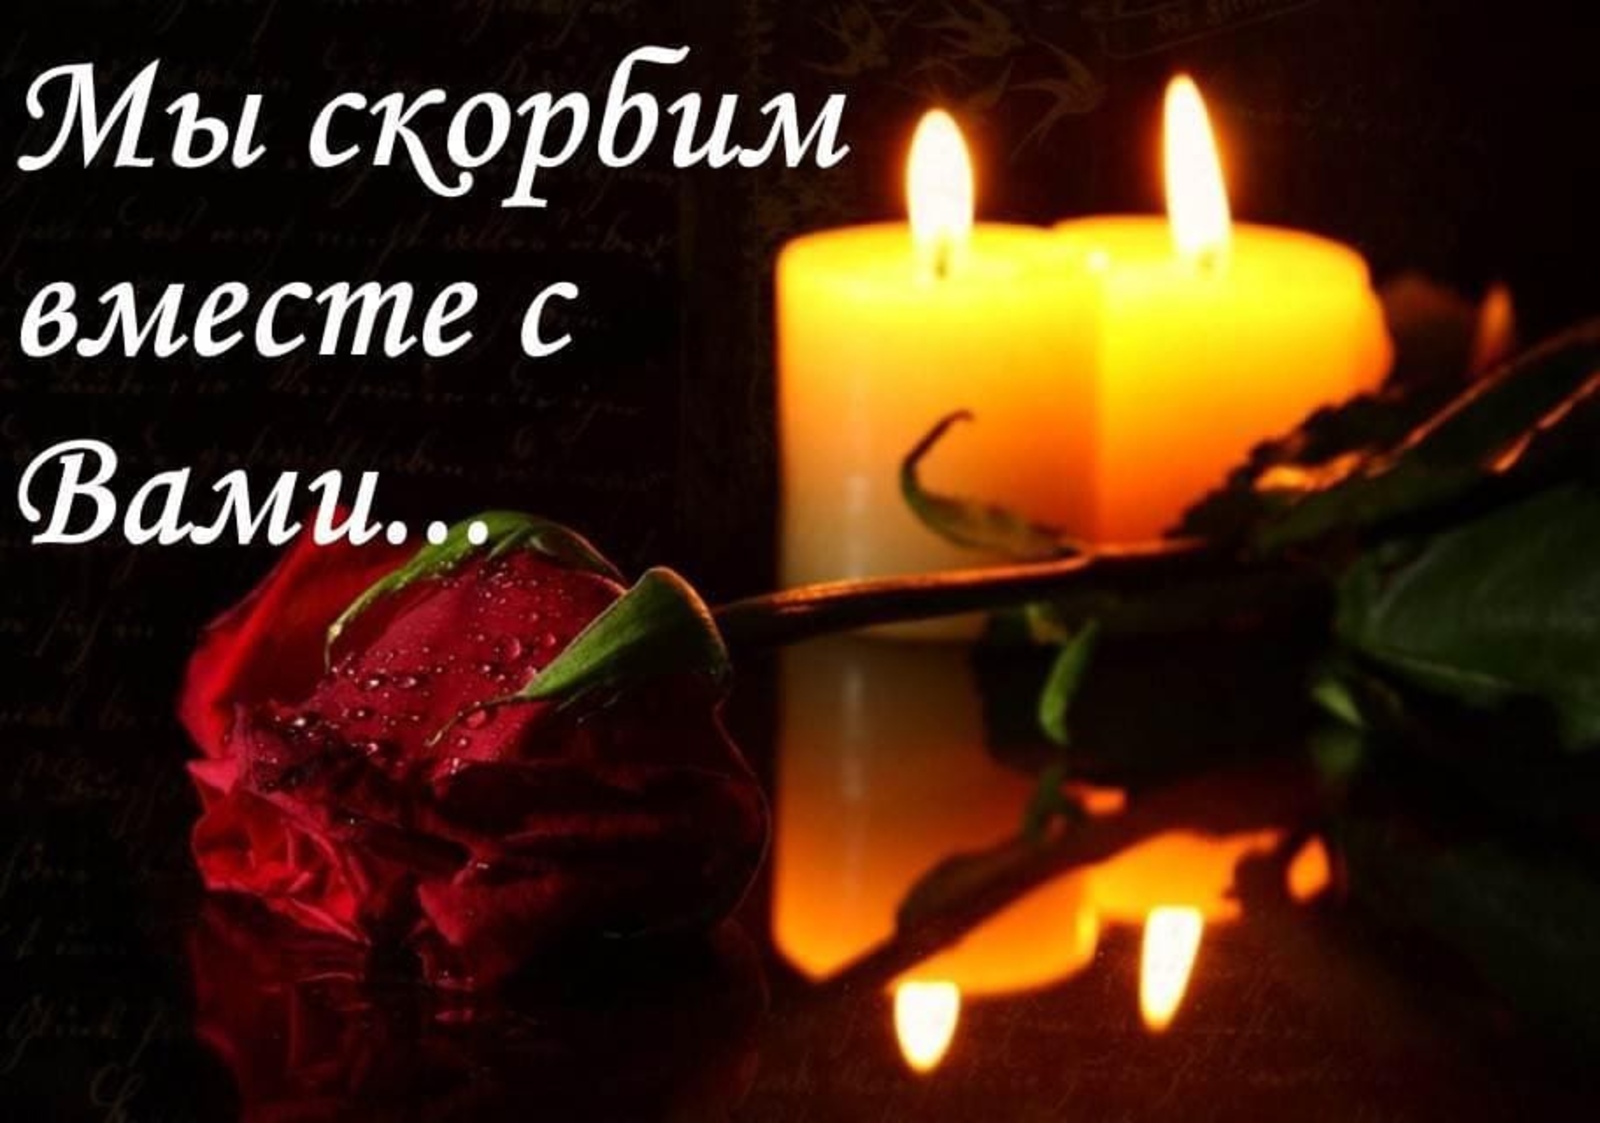 Скорбим и плачем. Скорбим. Свеча и цветы траур. Поминальная свеча и цветы. Выразить соболезнование.